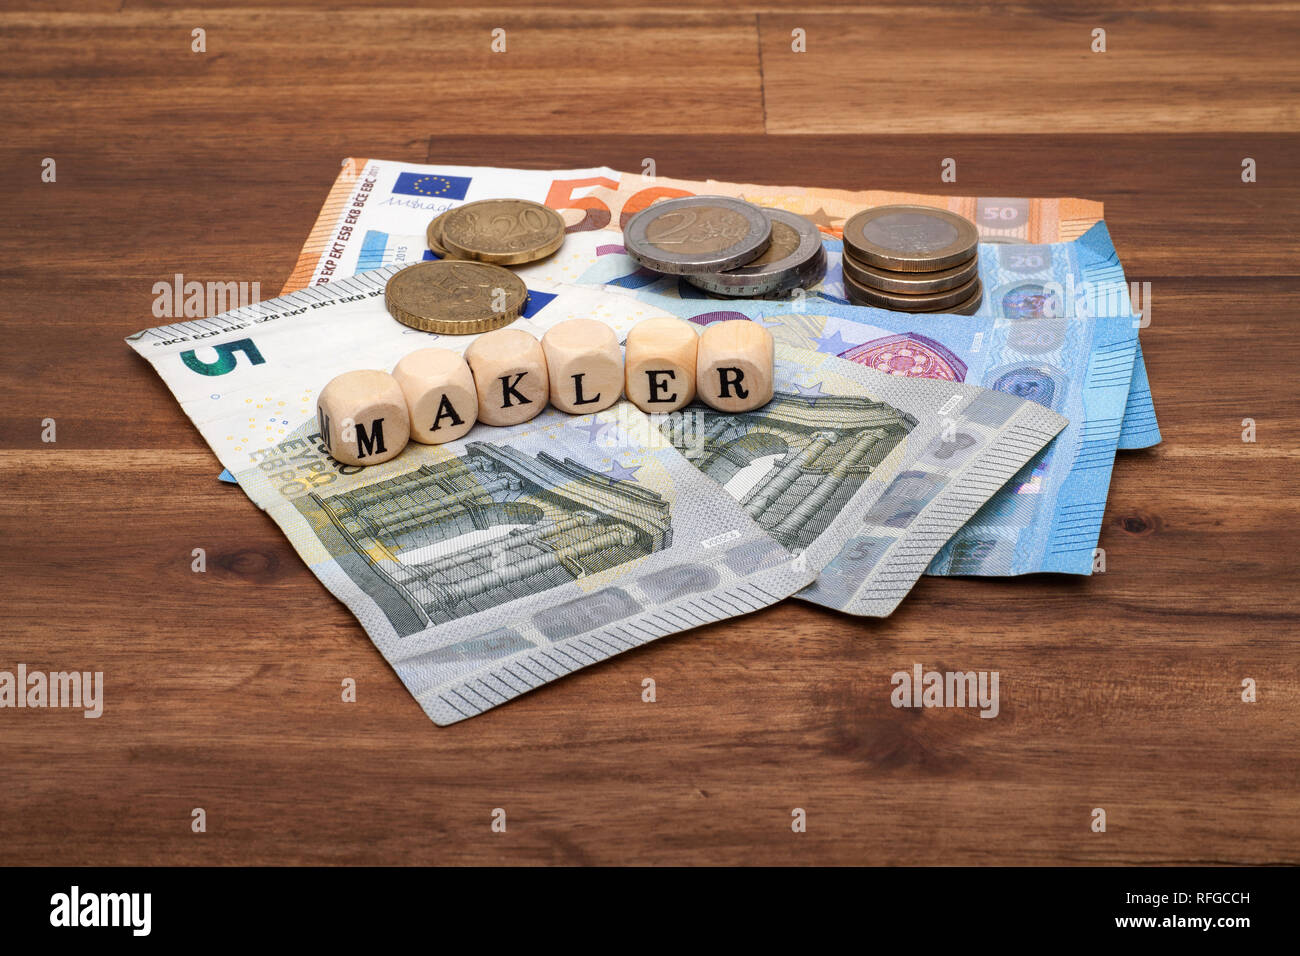 Die Euro Geldscheine Münzen und Schlüssel liegen auf dem Tisch mit dem Wort Makler Stock Photo